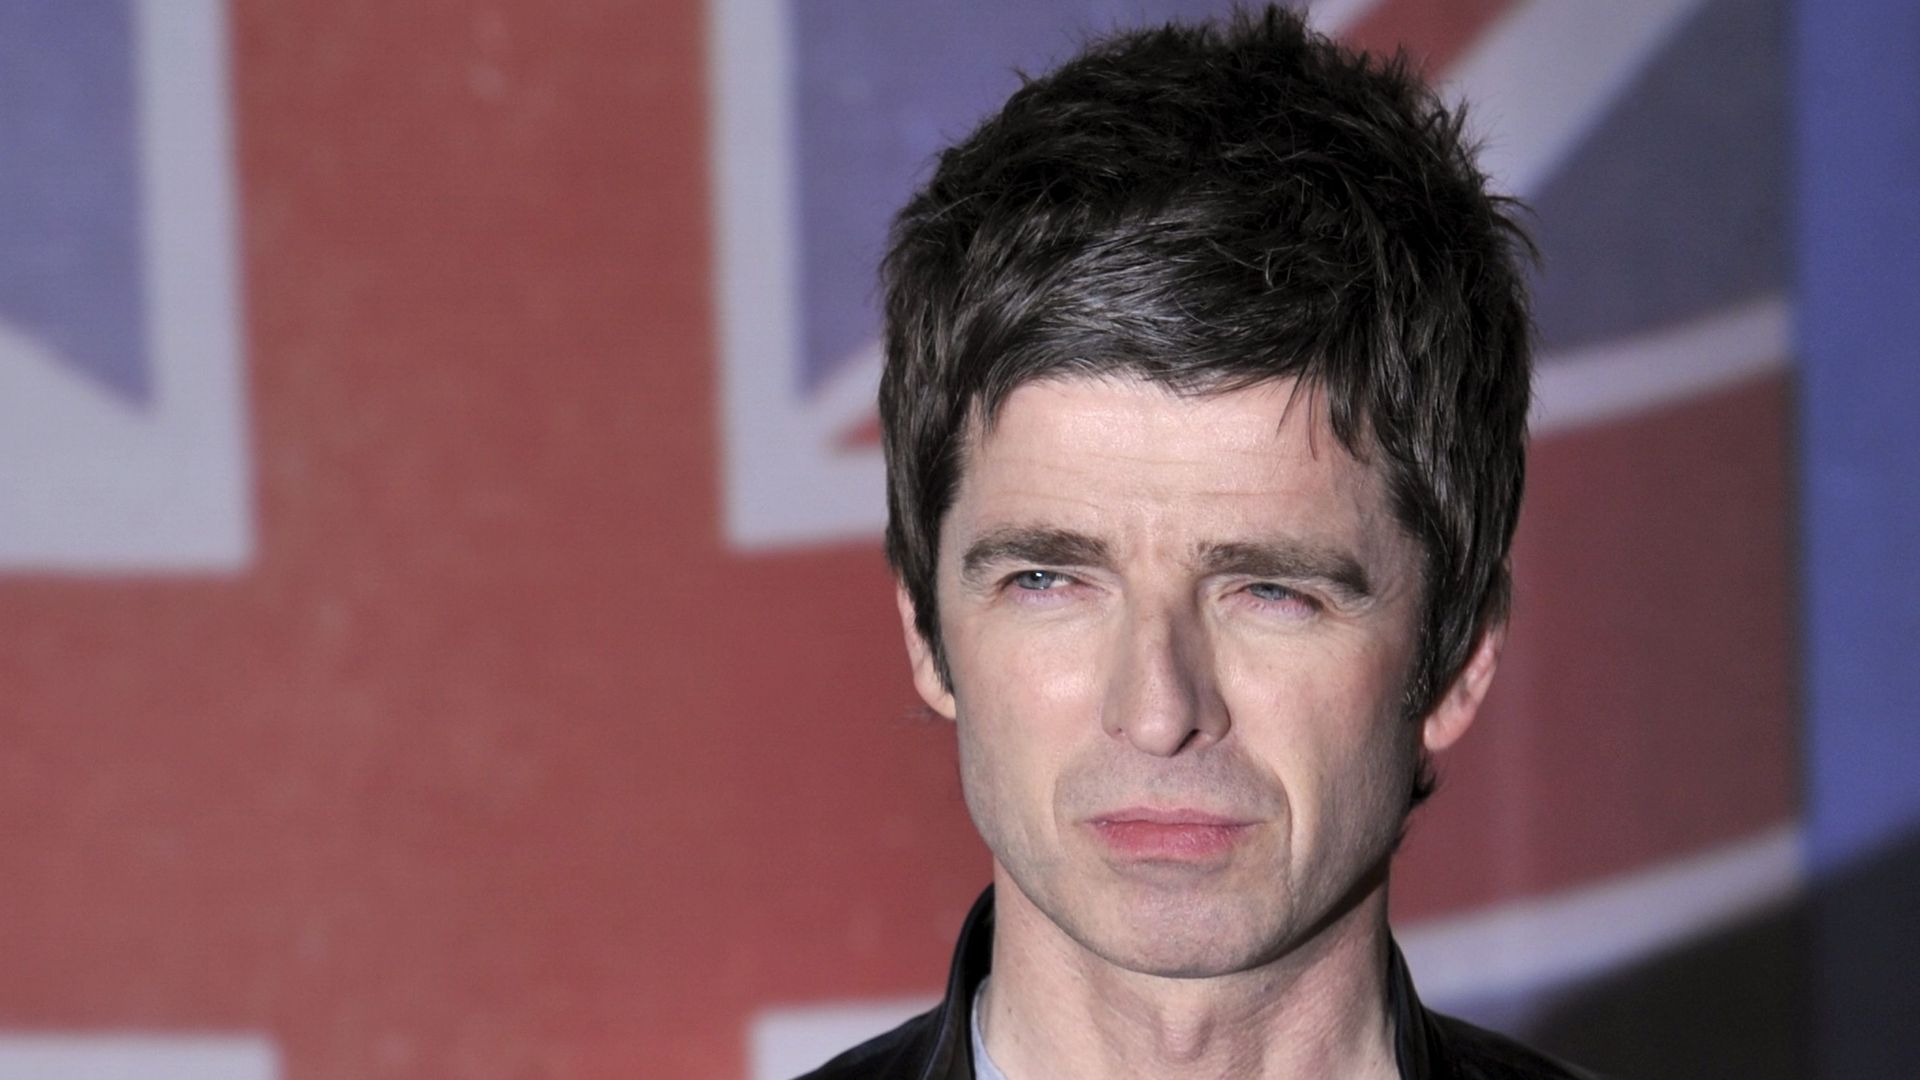 Un concert de charité avec Noel Gallagher pour la réouverture de la Manchester Arena